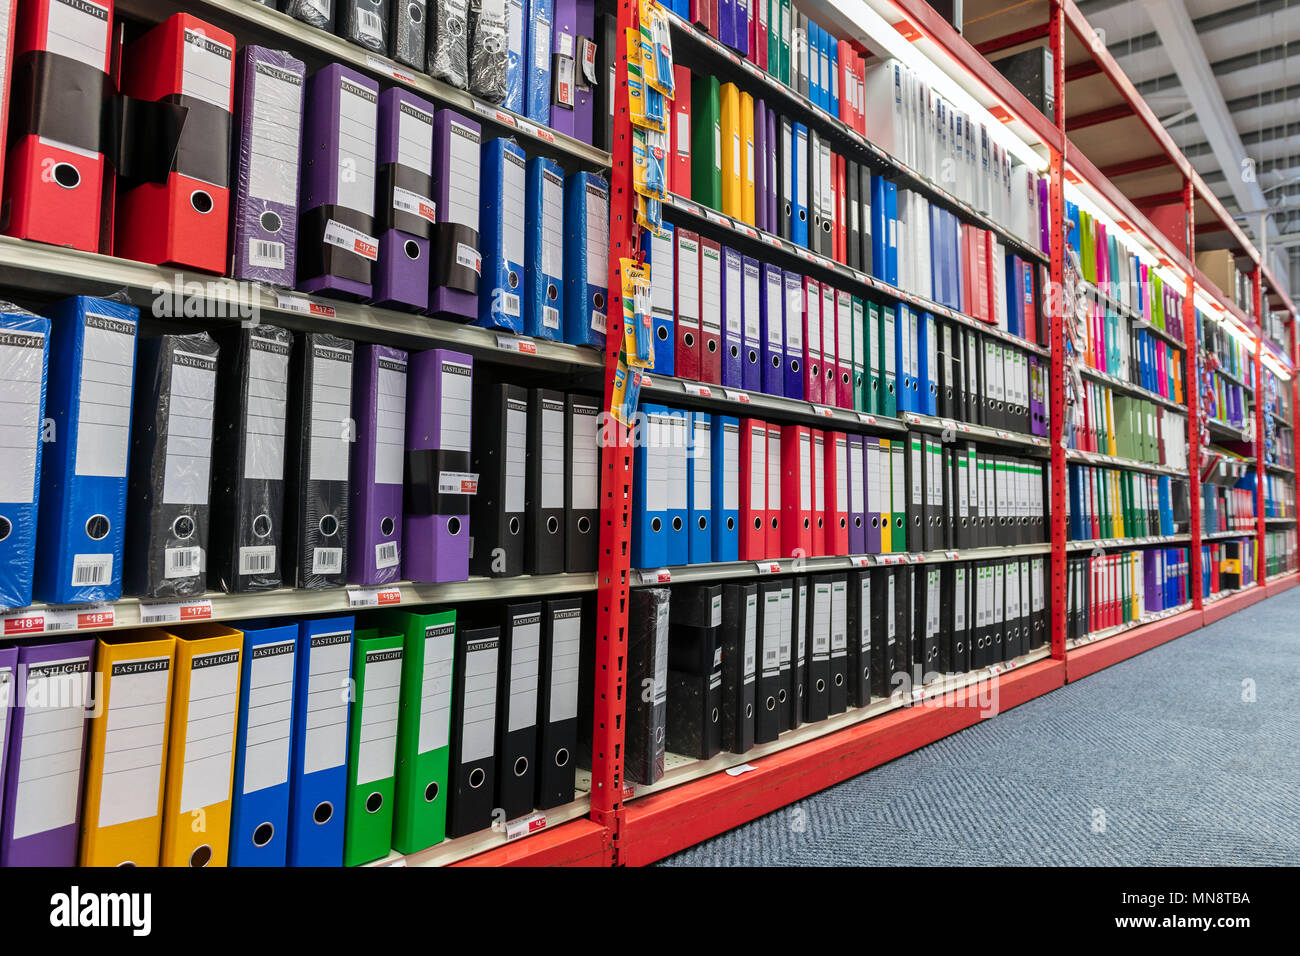 Hebelmechanik Dateien für den Verkauf in einem Büro liefert Store, UK. Stockfoto